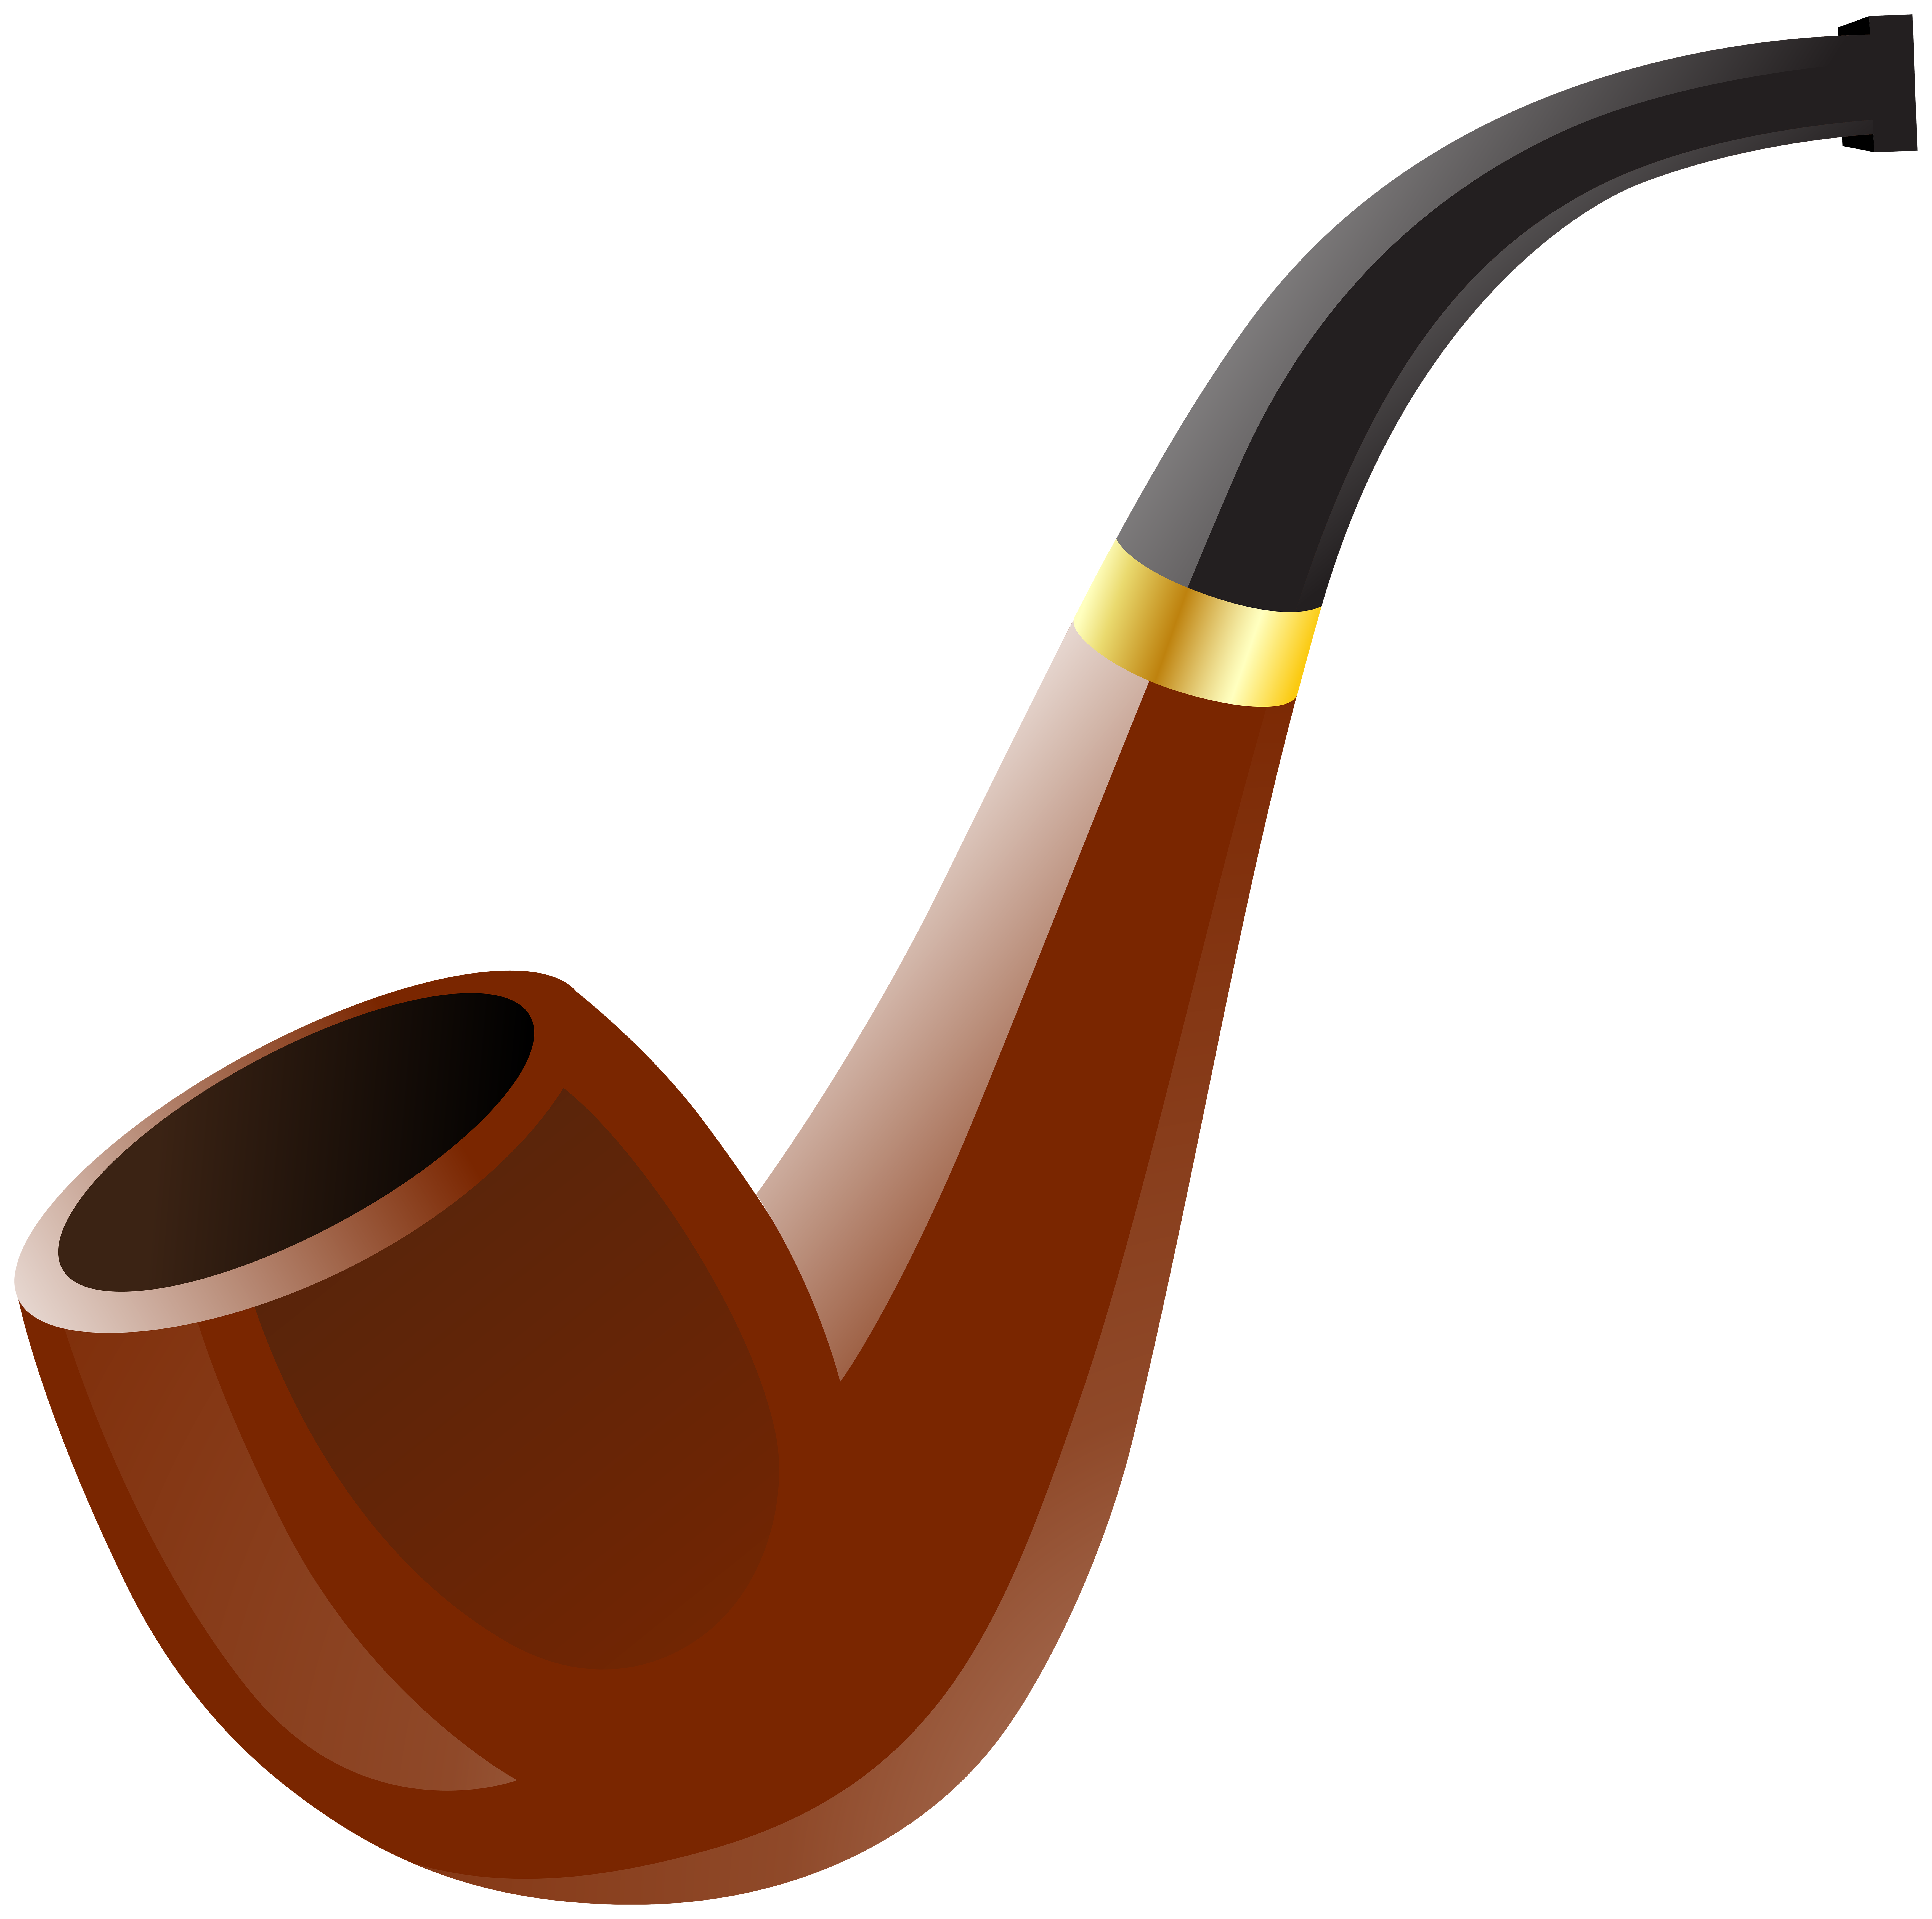 Tobacco pipe Stock Illustrati